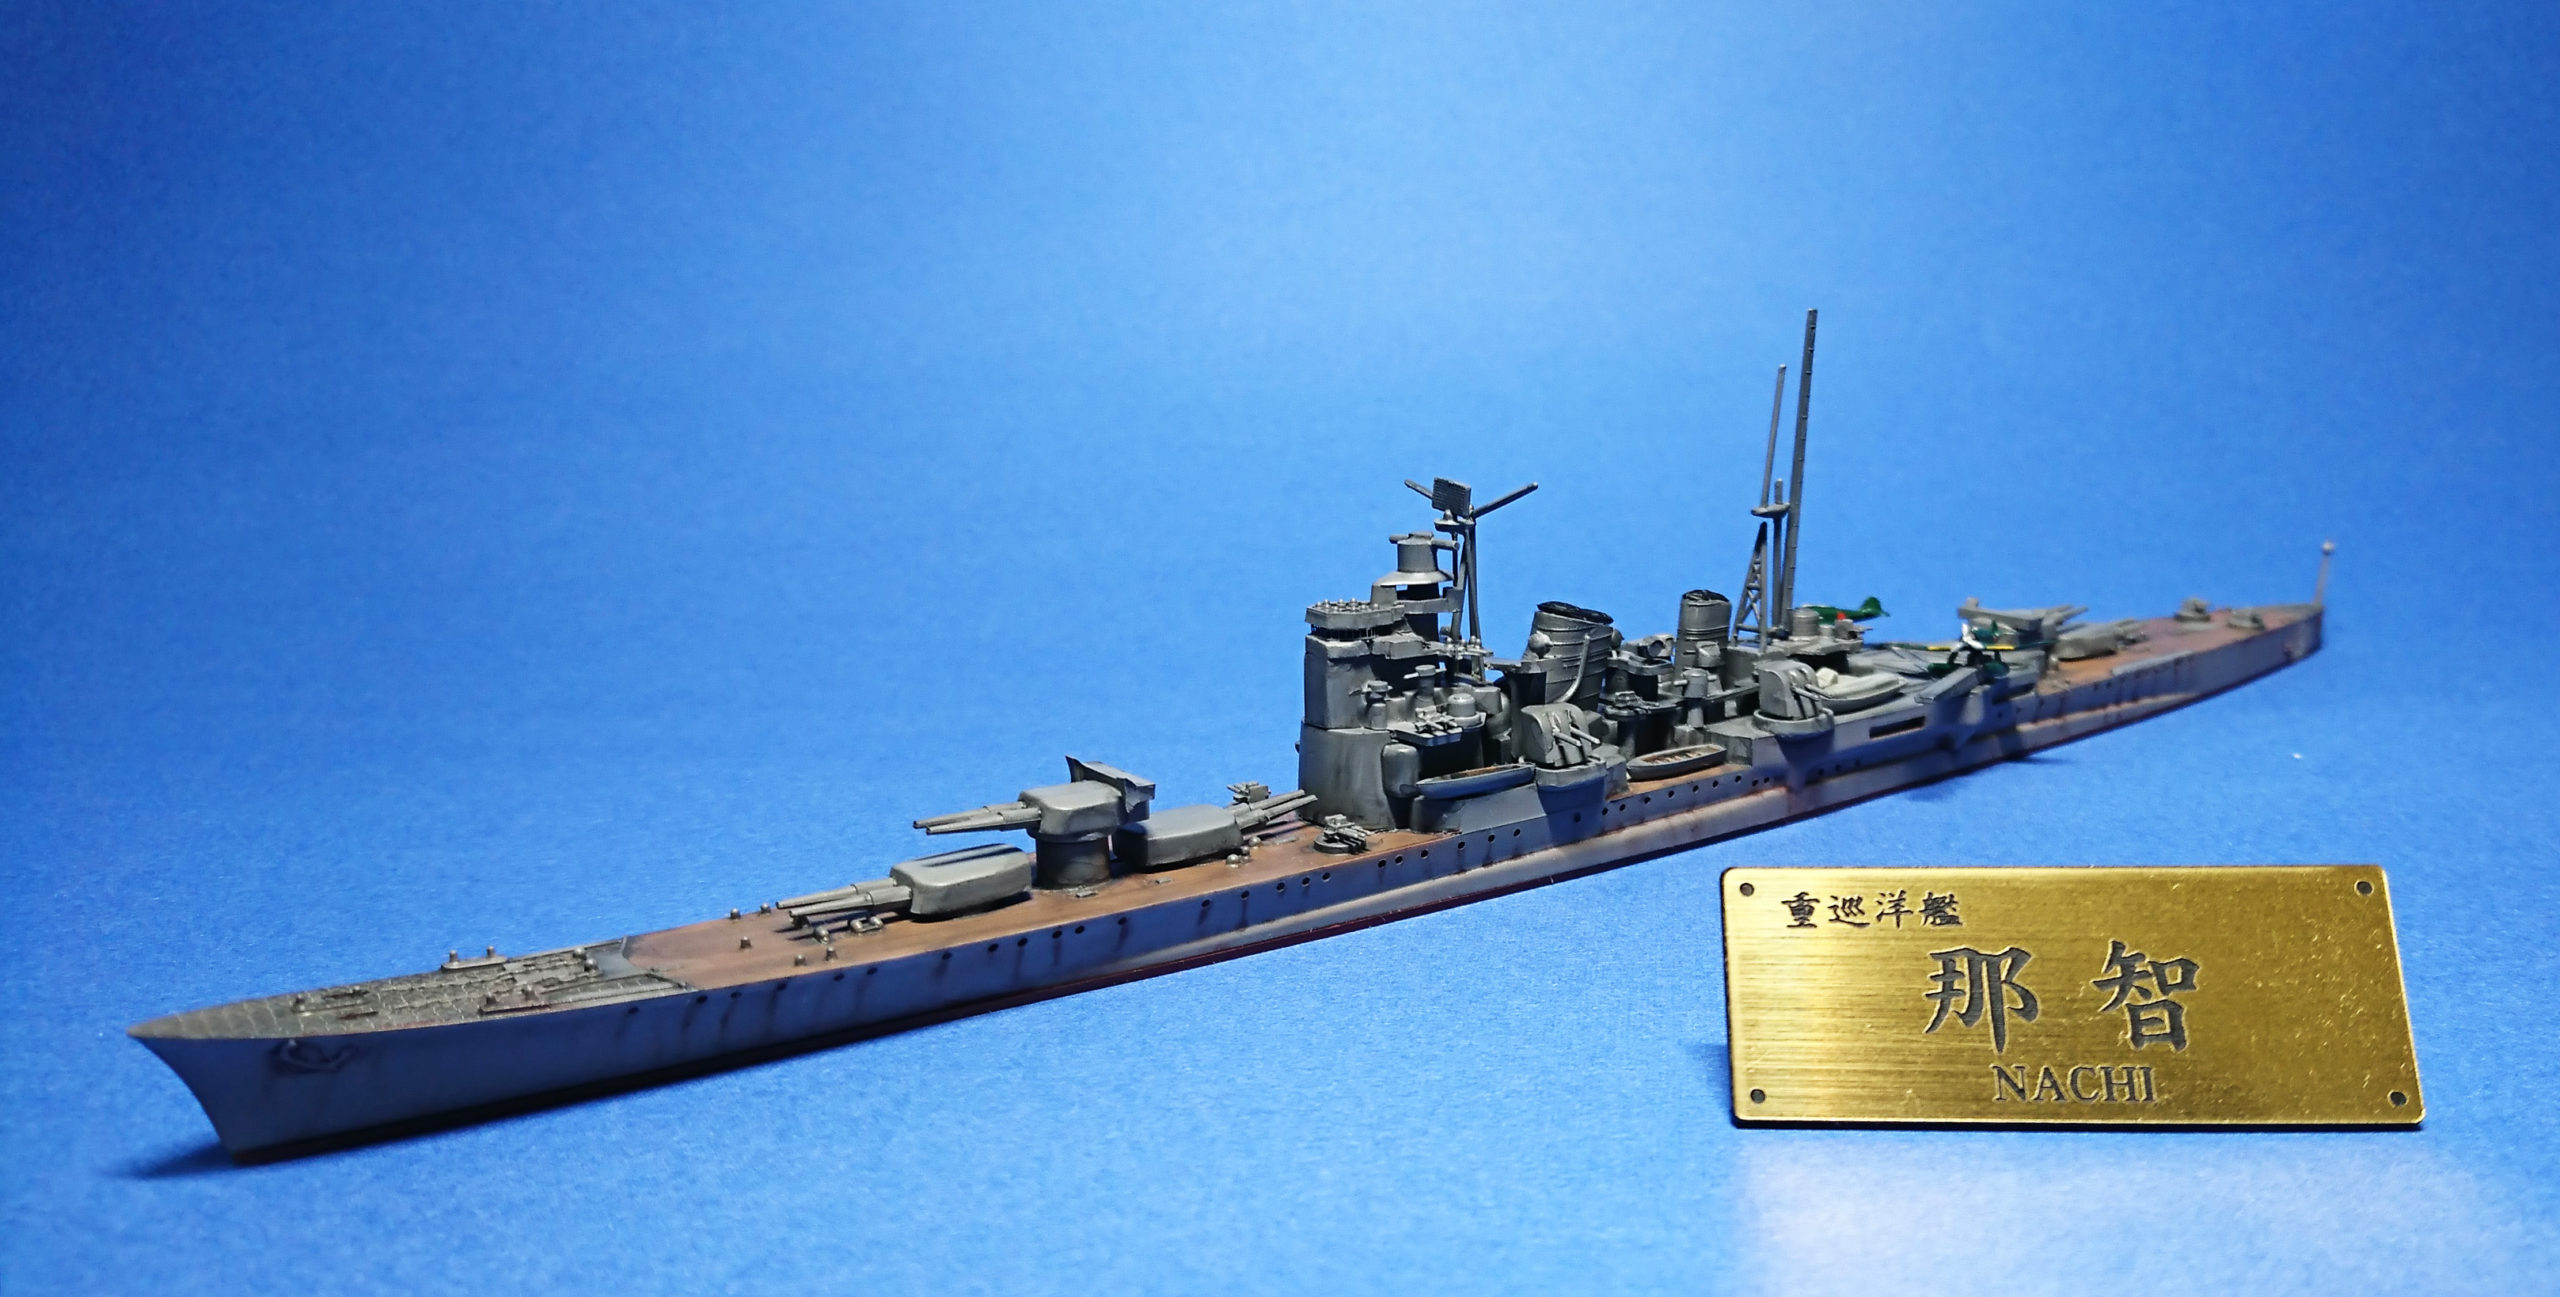 キットレビュー】ハセガワ 1/700 日本重巡洋艦 那智 | Modelyard